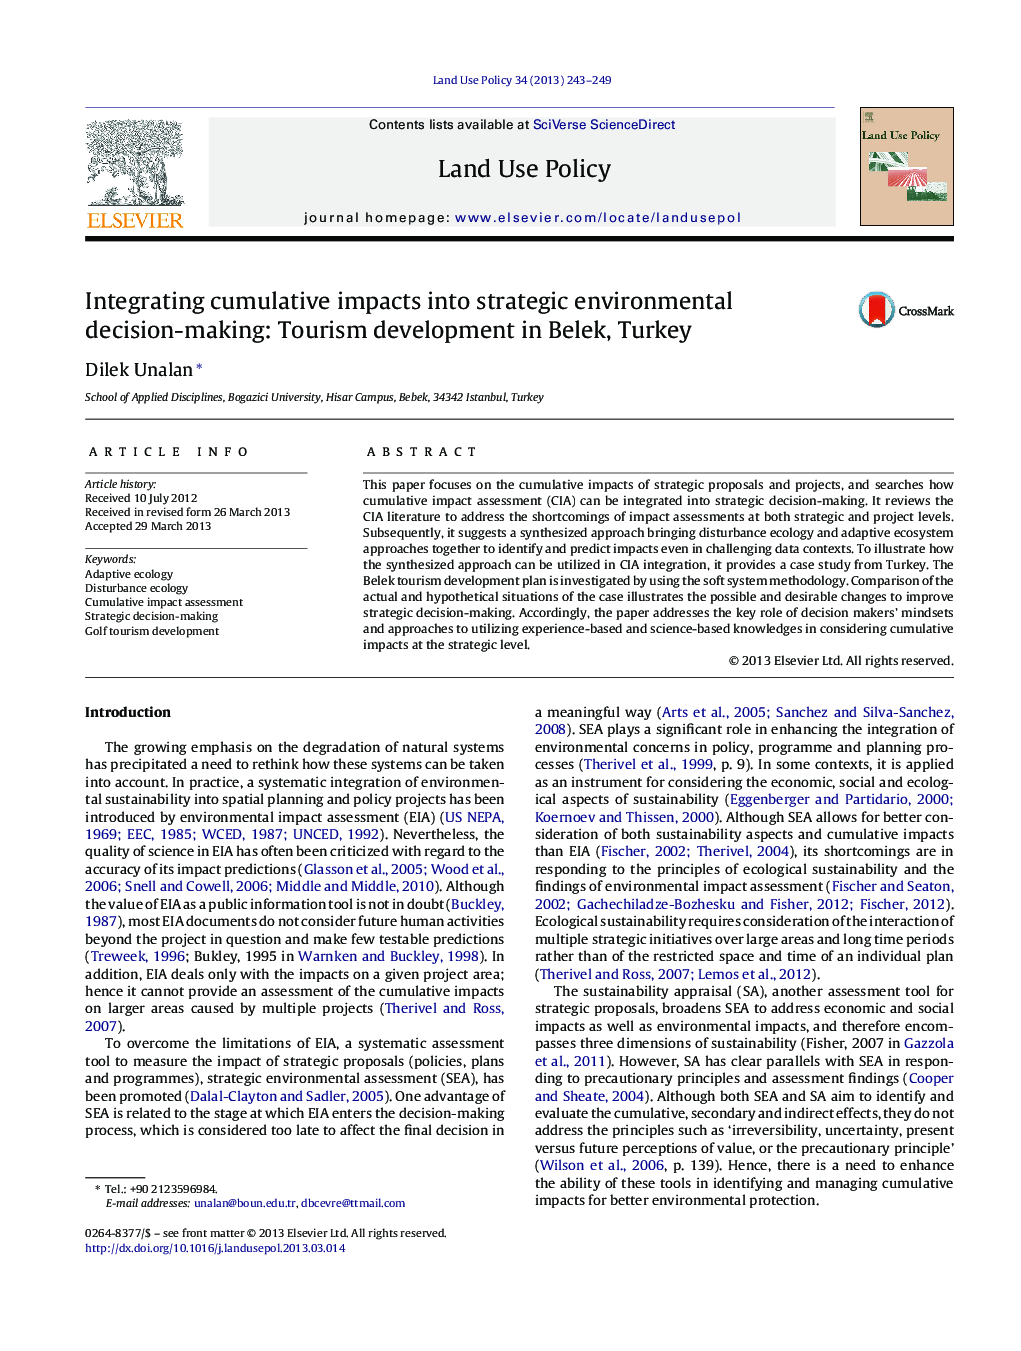 یکپارچه سازی اثرات تجمعی با تصمیم گیری استراتژیک زیست محیطی: توسعه گردشگری در بلک، ترکیه